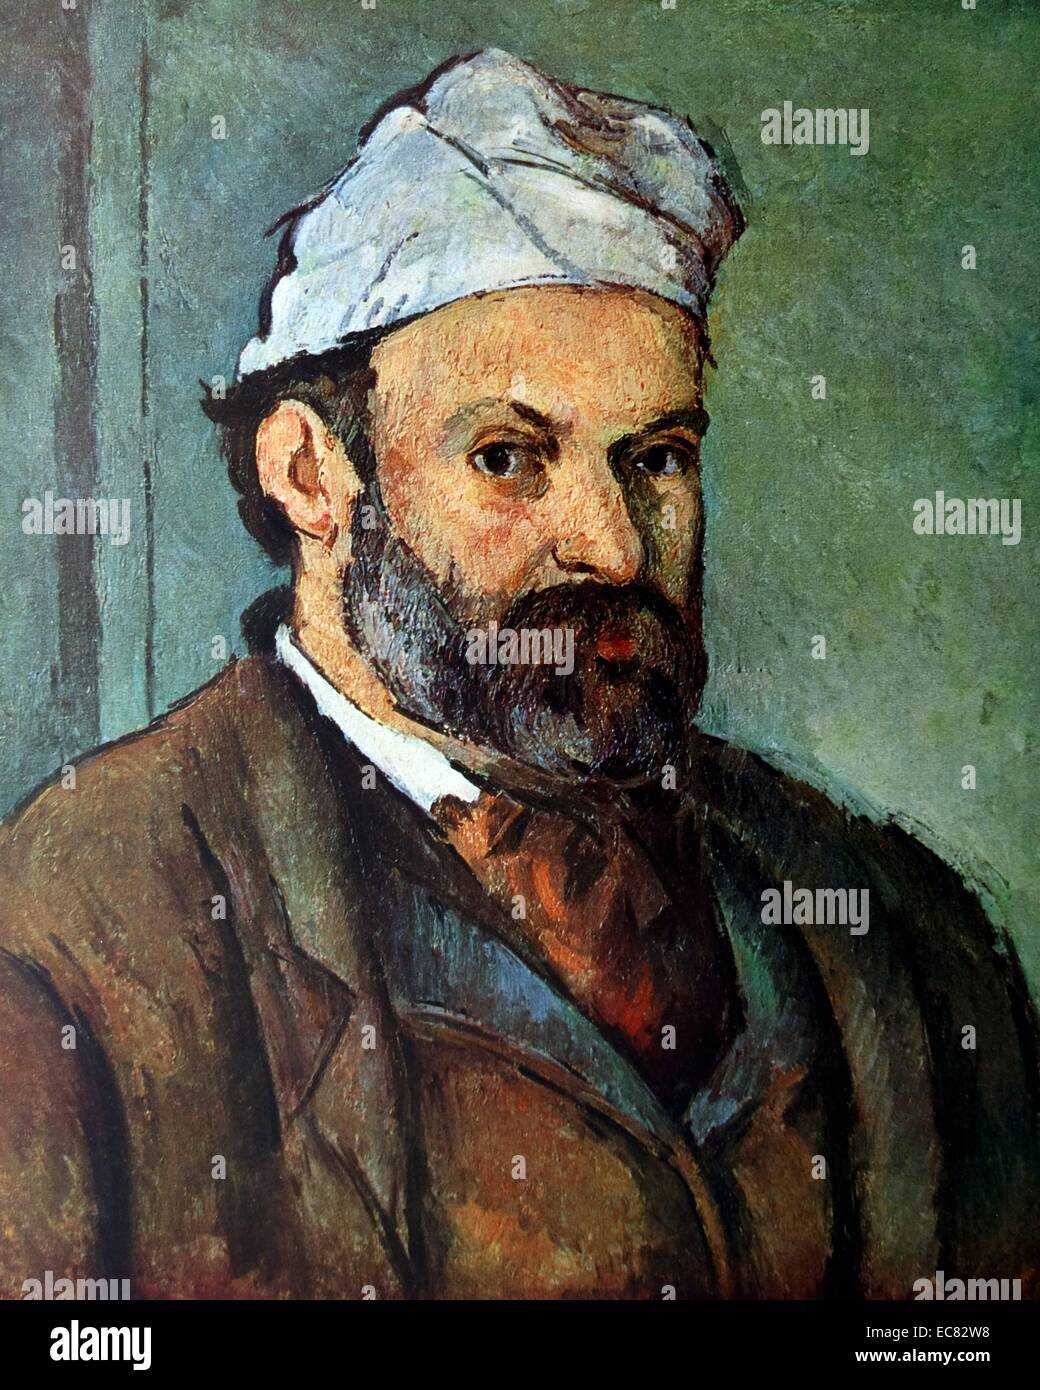 Selbstporträt des französischen Künstlers Paul Cézanne (1839-1906) und post-impressionistischen Malers. Datiert 1881 Stockfoto